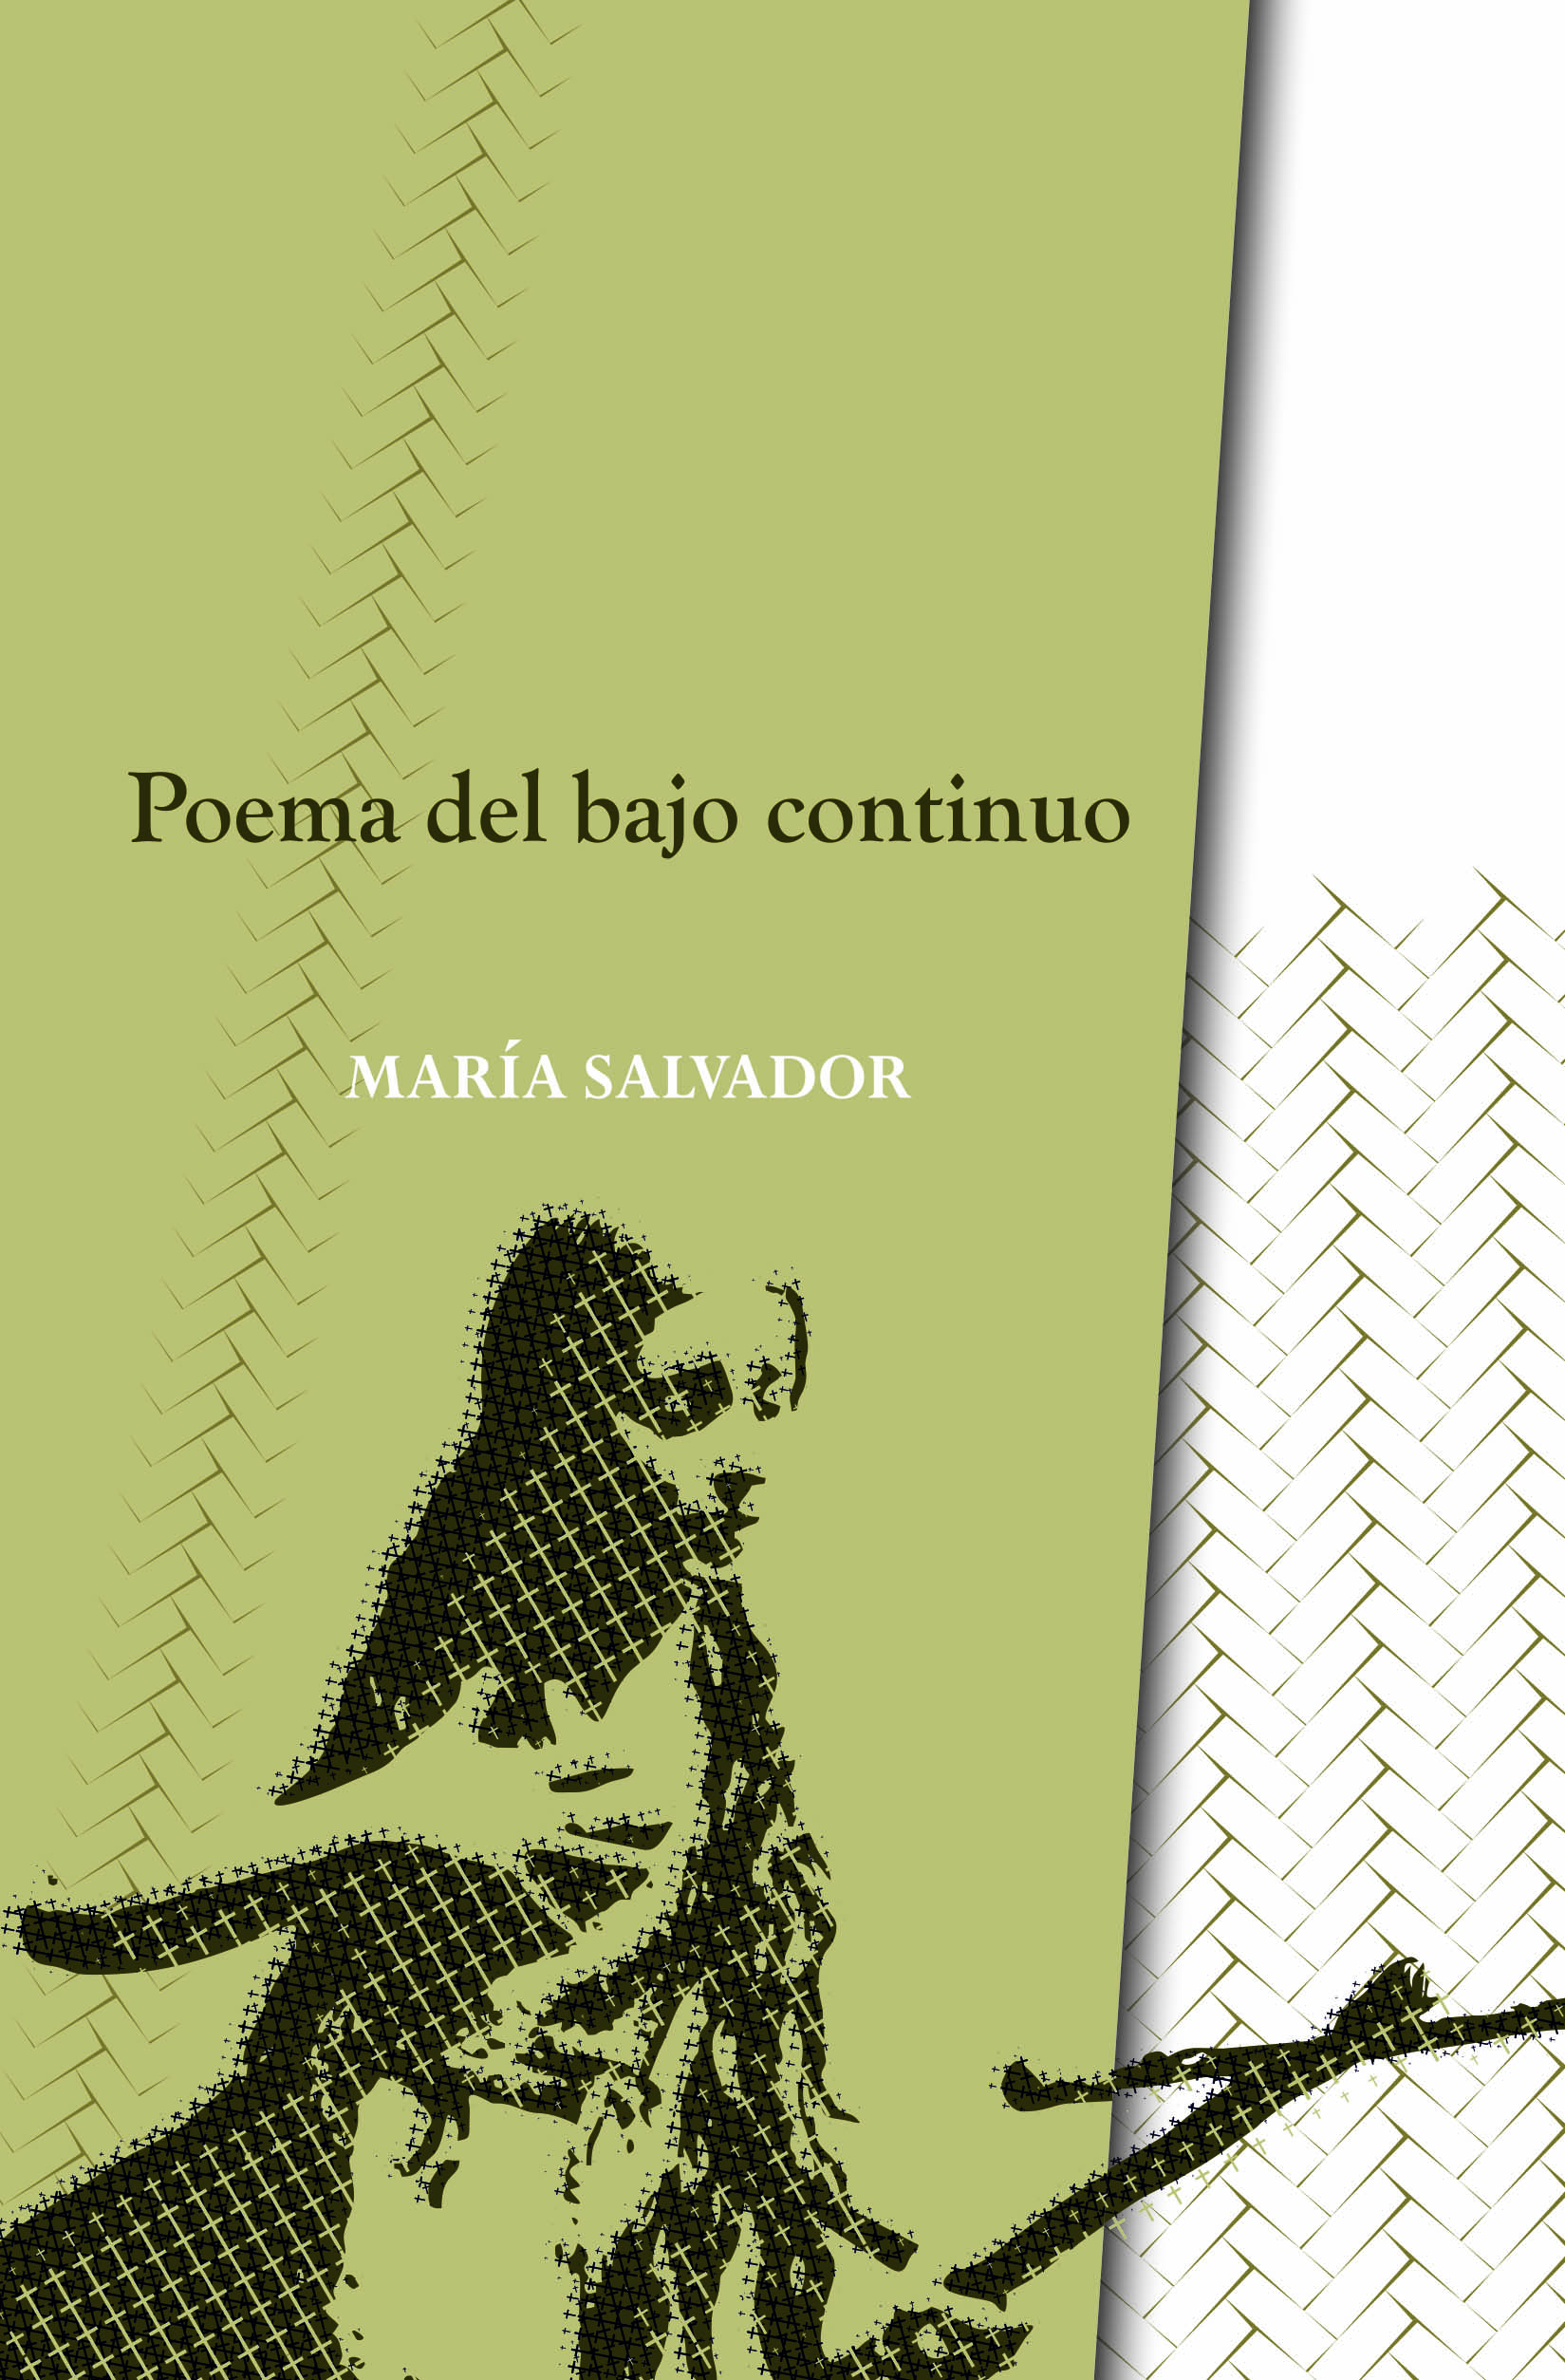 Poema del bajo continuo - María Salvador | La Garúa Poesía